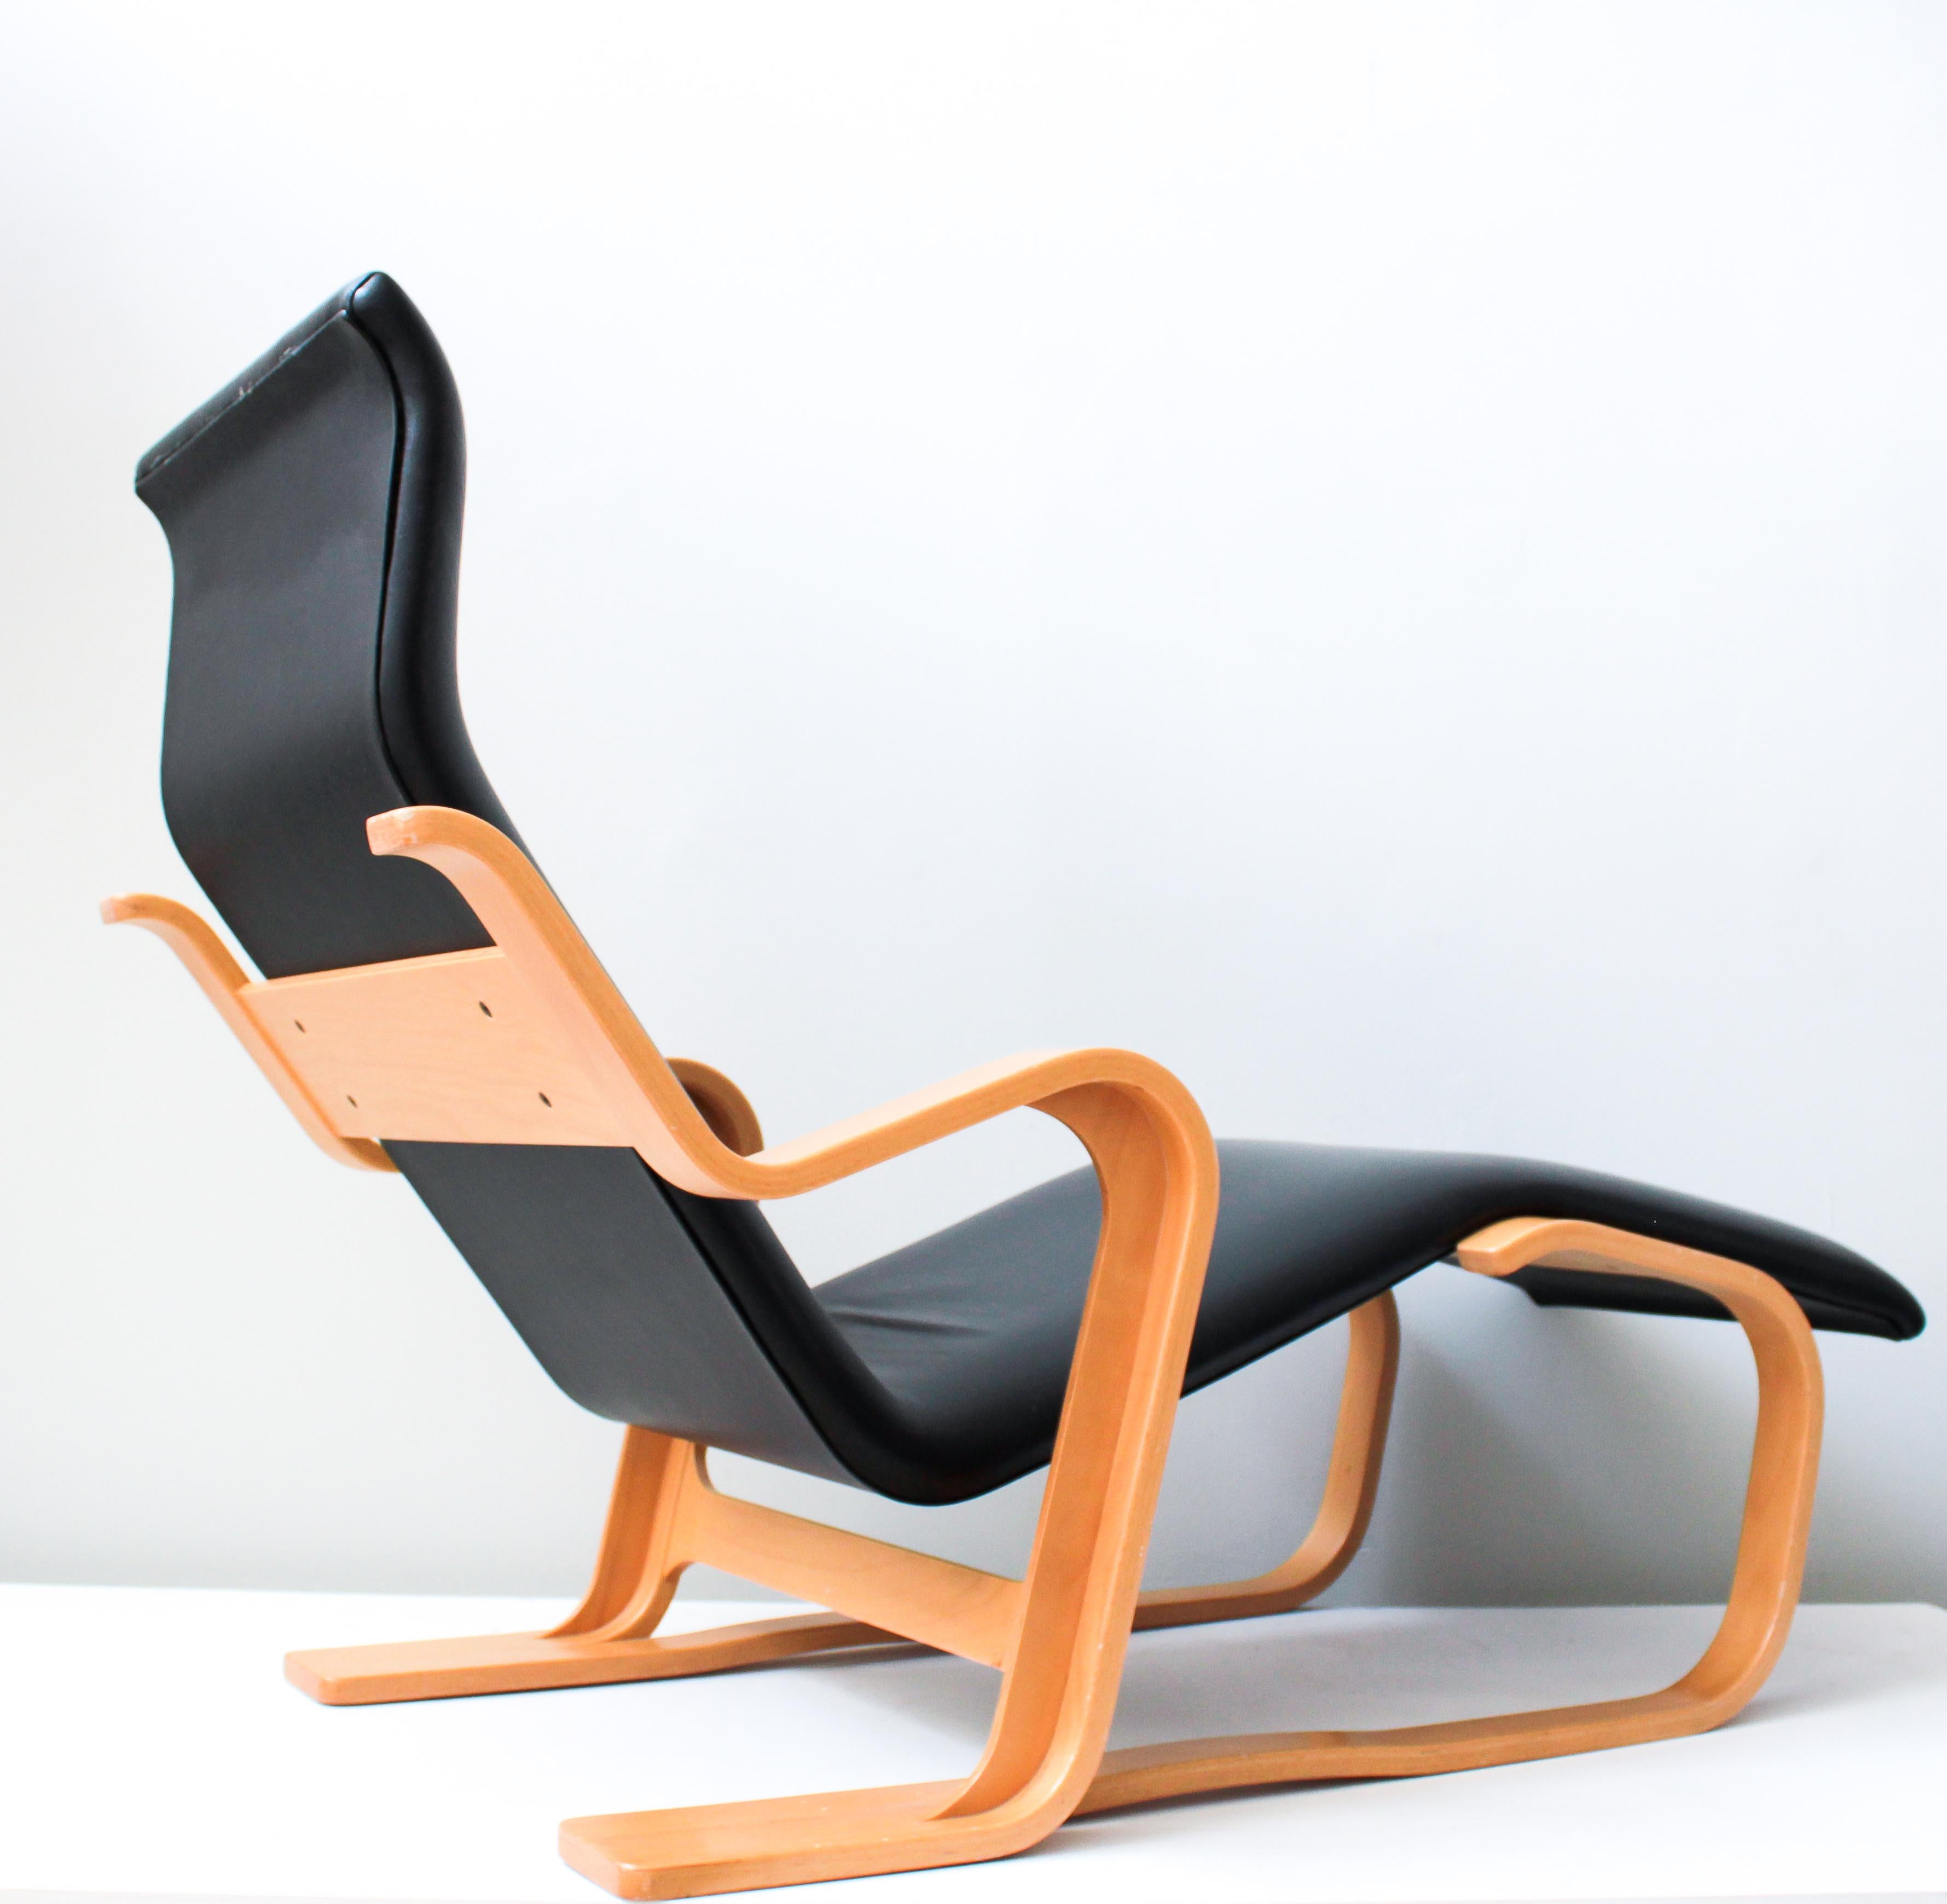 Marcel Breuer a créé des meubles innovants en bois courbé. Cette chaise longue est considérée comme l'une des pièces les plus importantes de son époque. Elle a été conçue à l'origine pour Isokon England en 1935-36, mais rééditée par le Studio Knoll